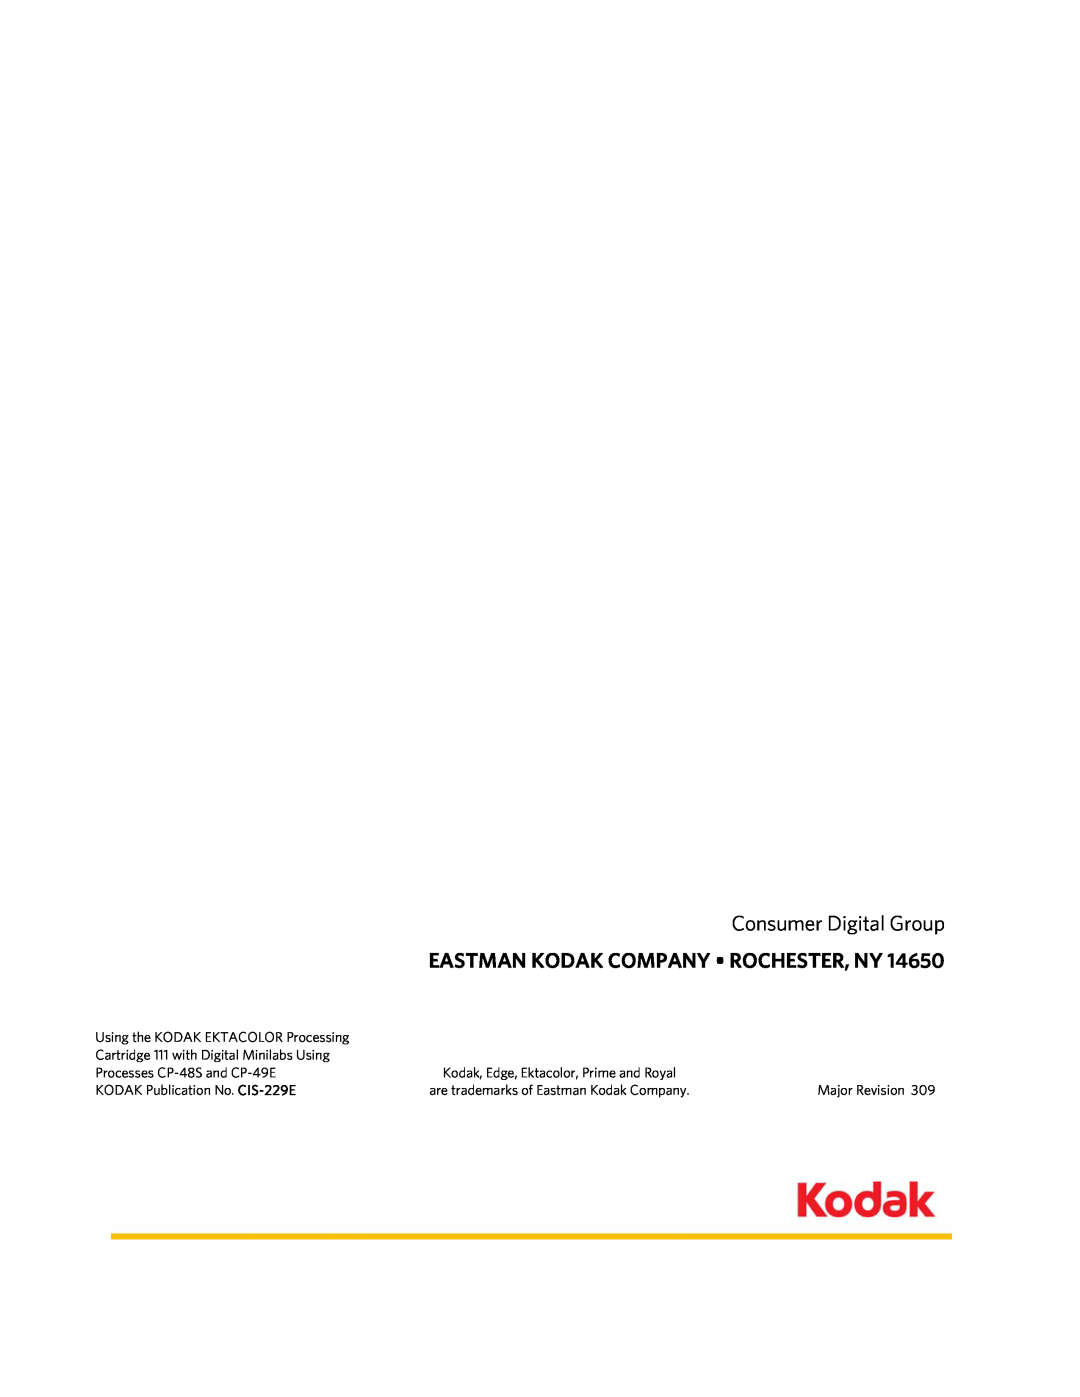 Kodak CP-48S manual Eastman Kodak Company Rochester, Ny, Consumer Digital Group, Using the KODAK EKTACOLOR Processing 